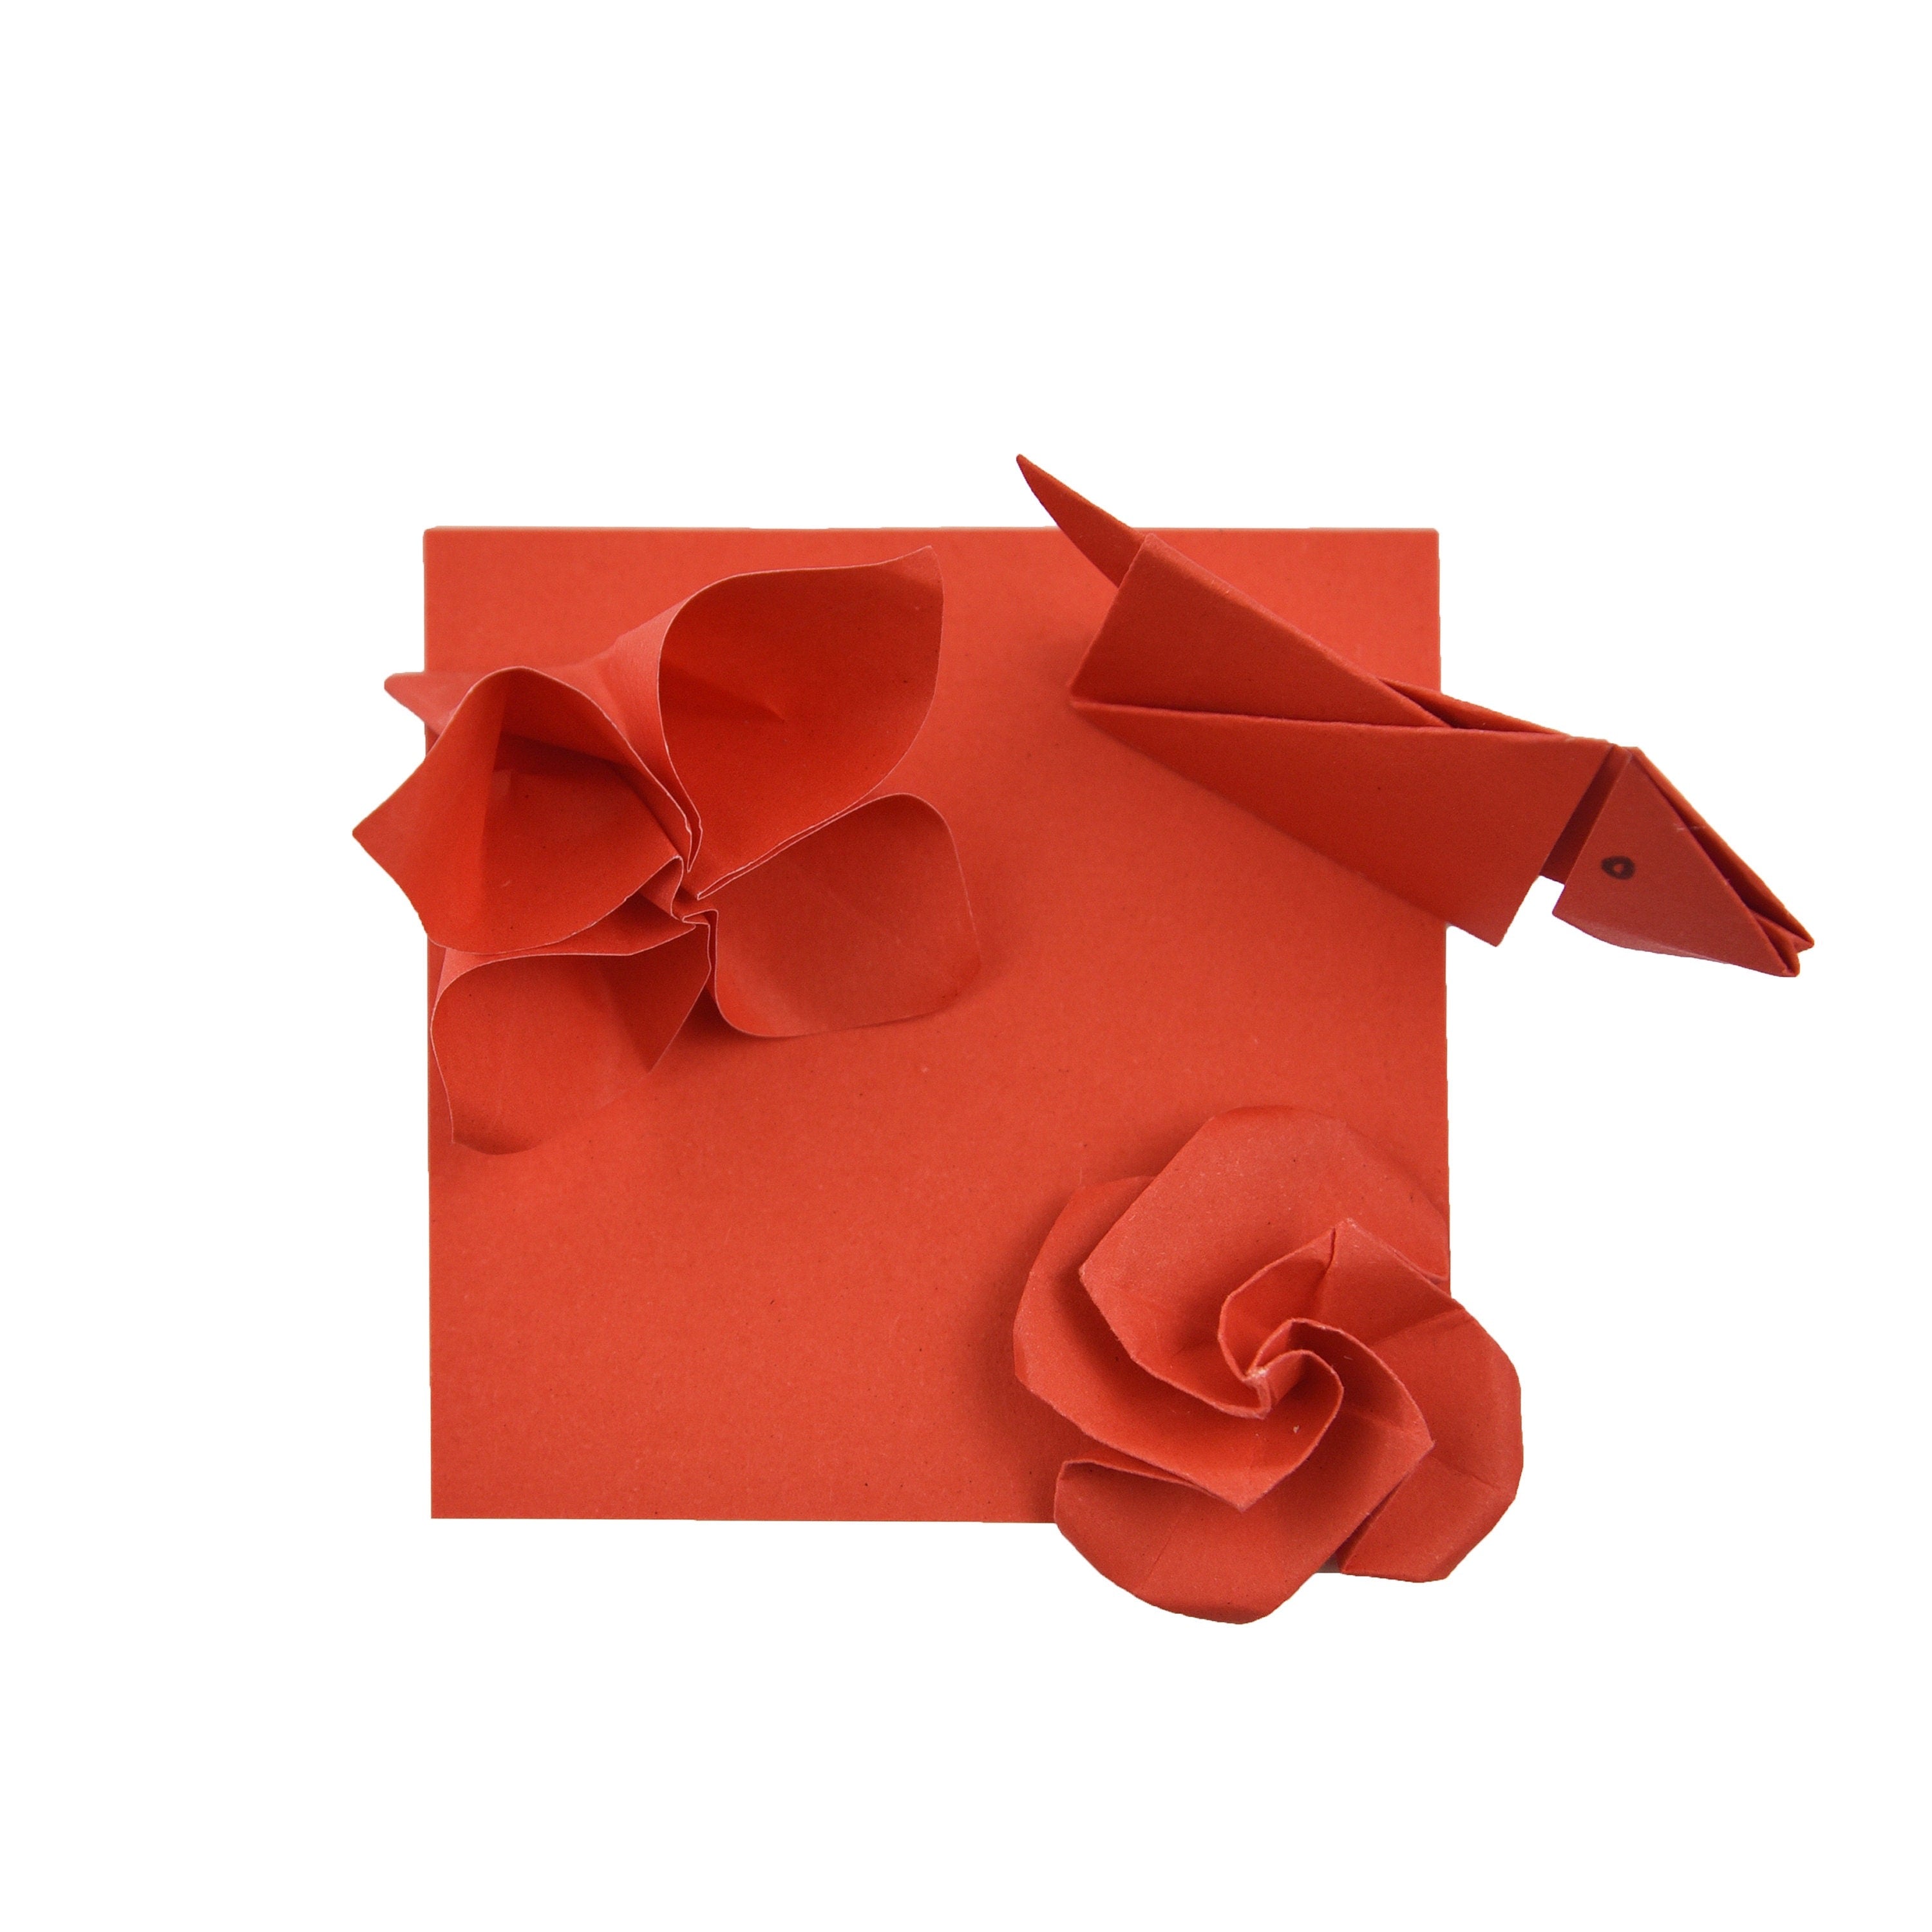 100 fogli di carta origami - 3x3 pollici - Confezione di carta quadrata per piegare, gru origami e decorazioni - S04